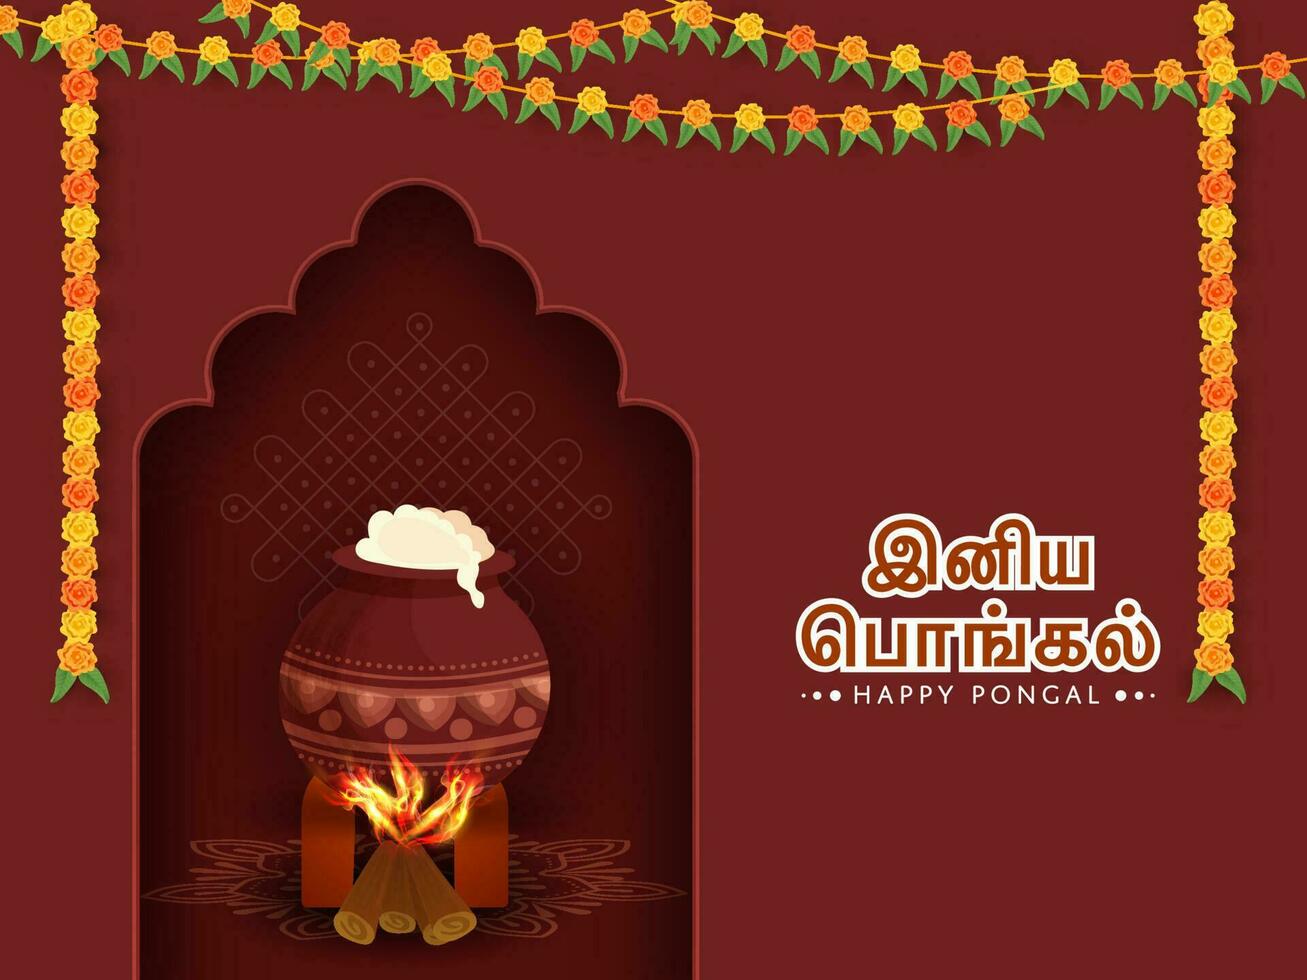 Aufkleber Stil glücklich pongal Text geschrieben im Tamil Sprache mit Kochen Essen Topf Über Brennholz und Blumen- Girlande dekoriert auf verbrannt Umber kolam Hintergrund. vektor